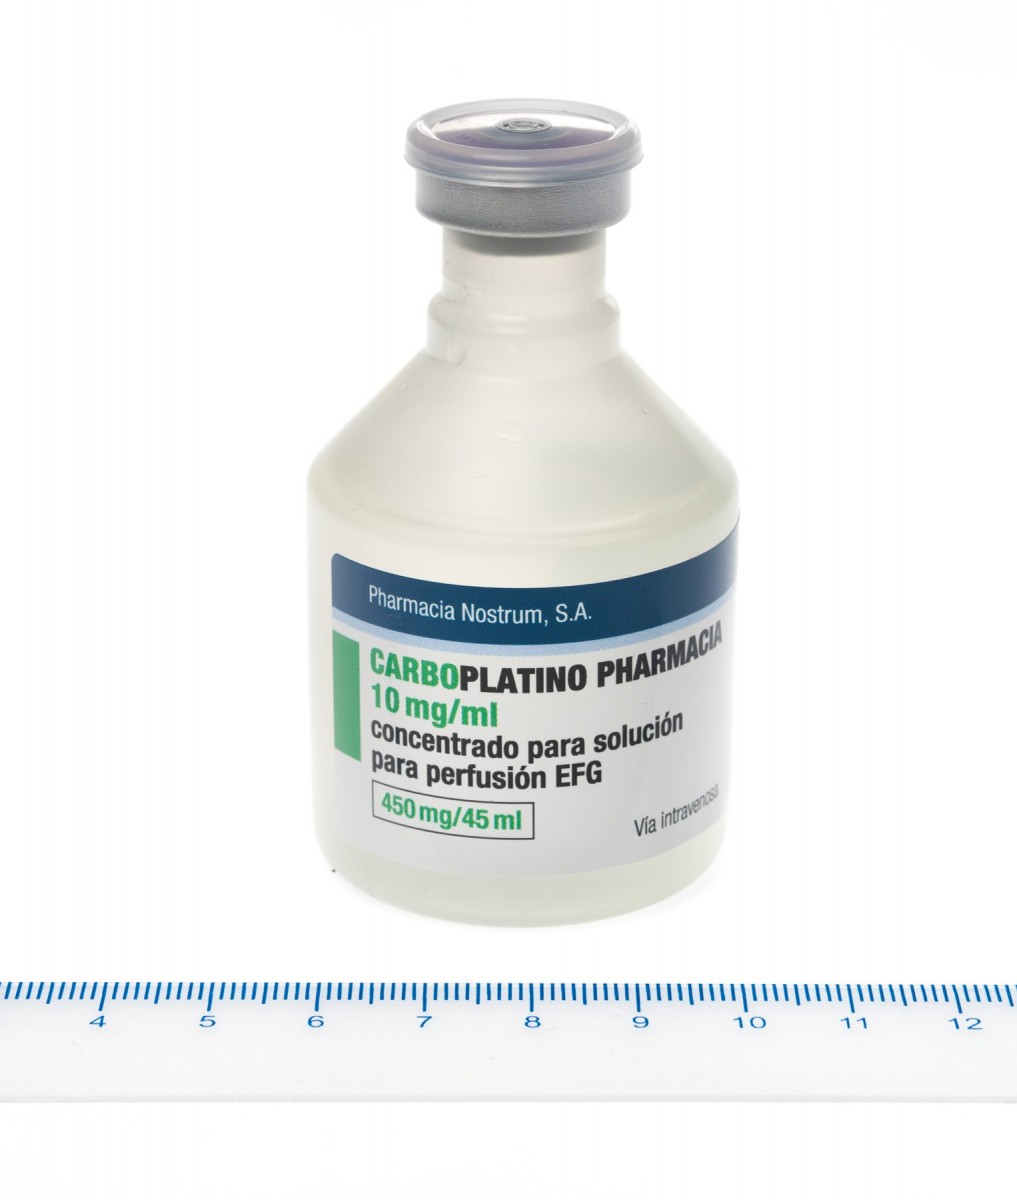 CARBOPLATINO PHARMACIA 10 mg/ml CONCENTRADO PARA SOLUCION PARA PERFUSION EFG, 1 vial de 45 ml fotografía de la forma farmacéutica.